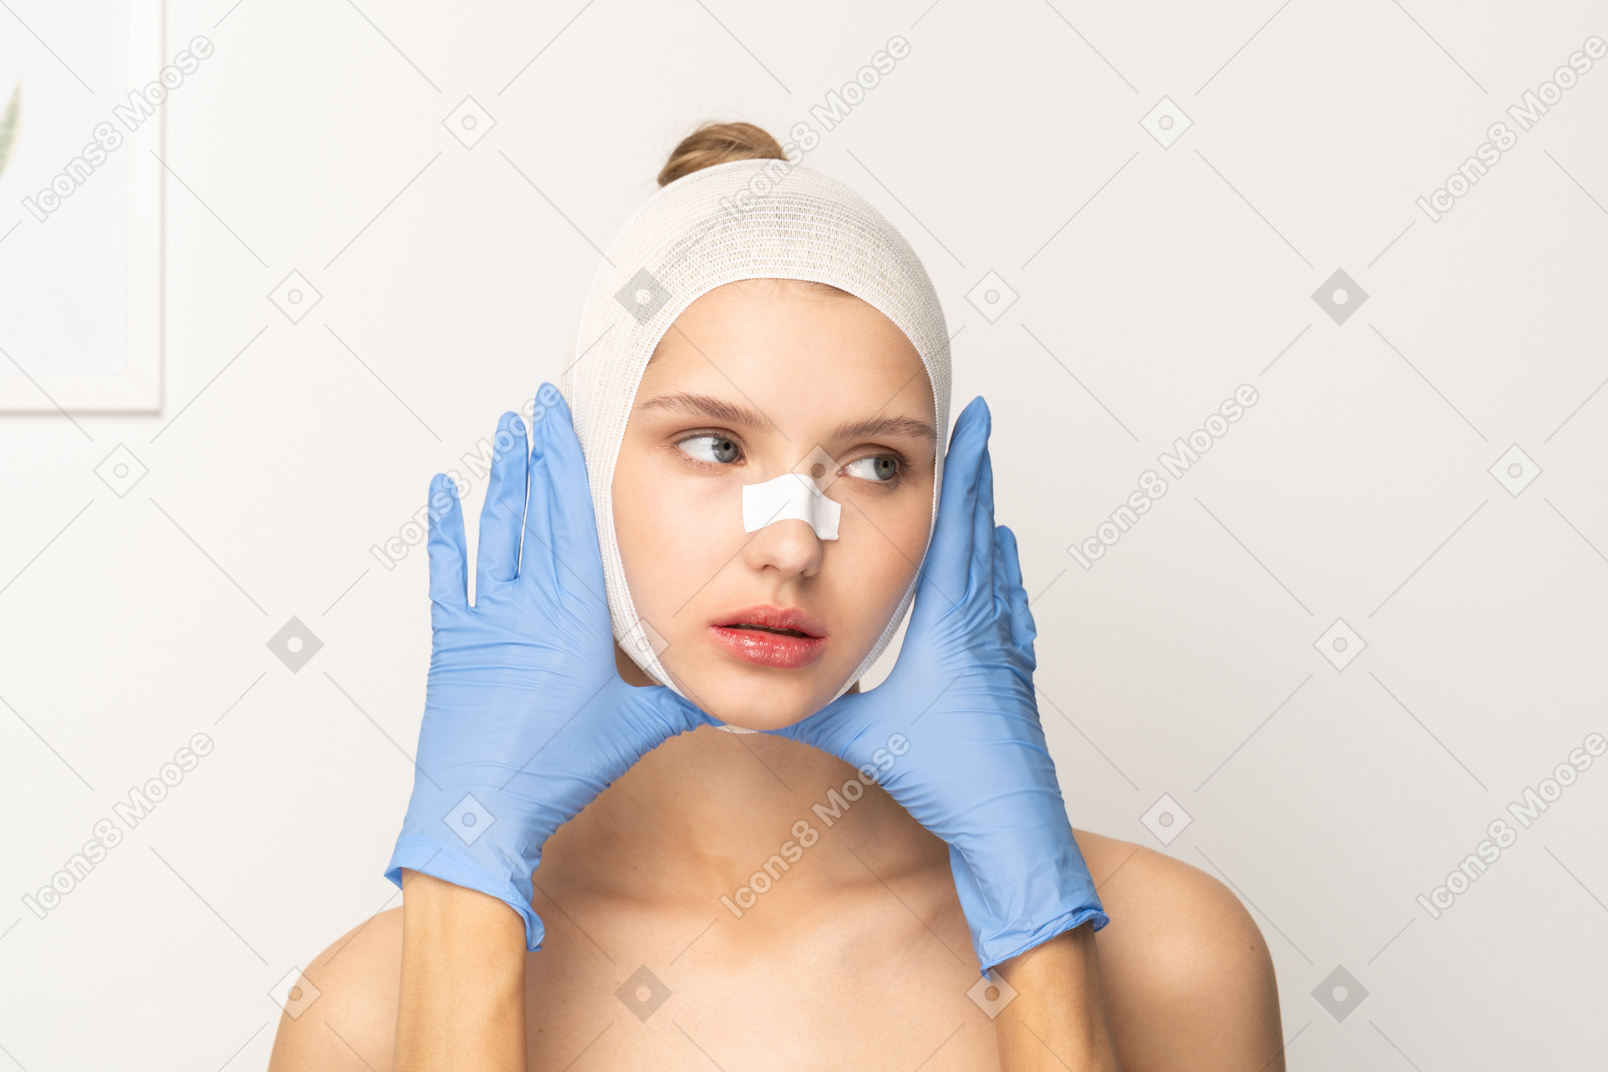 彼女の顔をフレーミングする手袋をはめた手を持つ女性患者